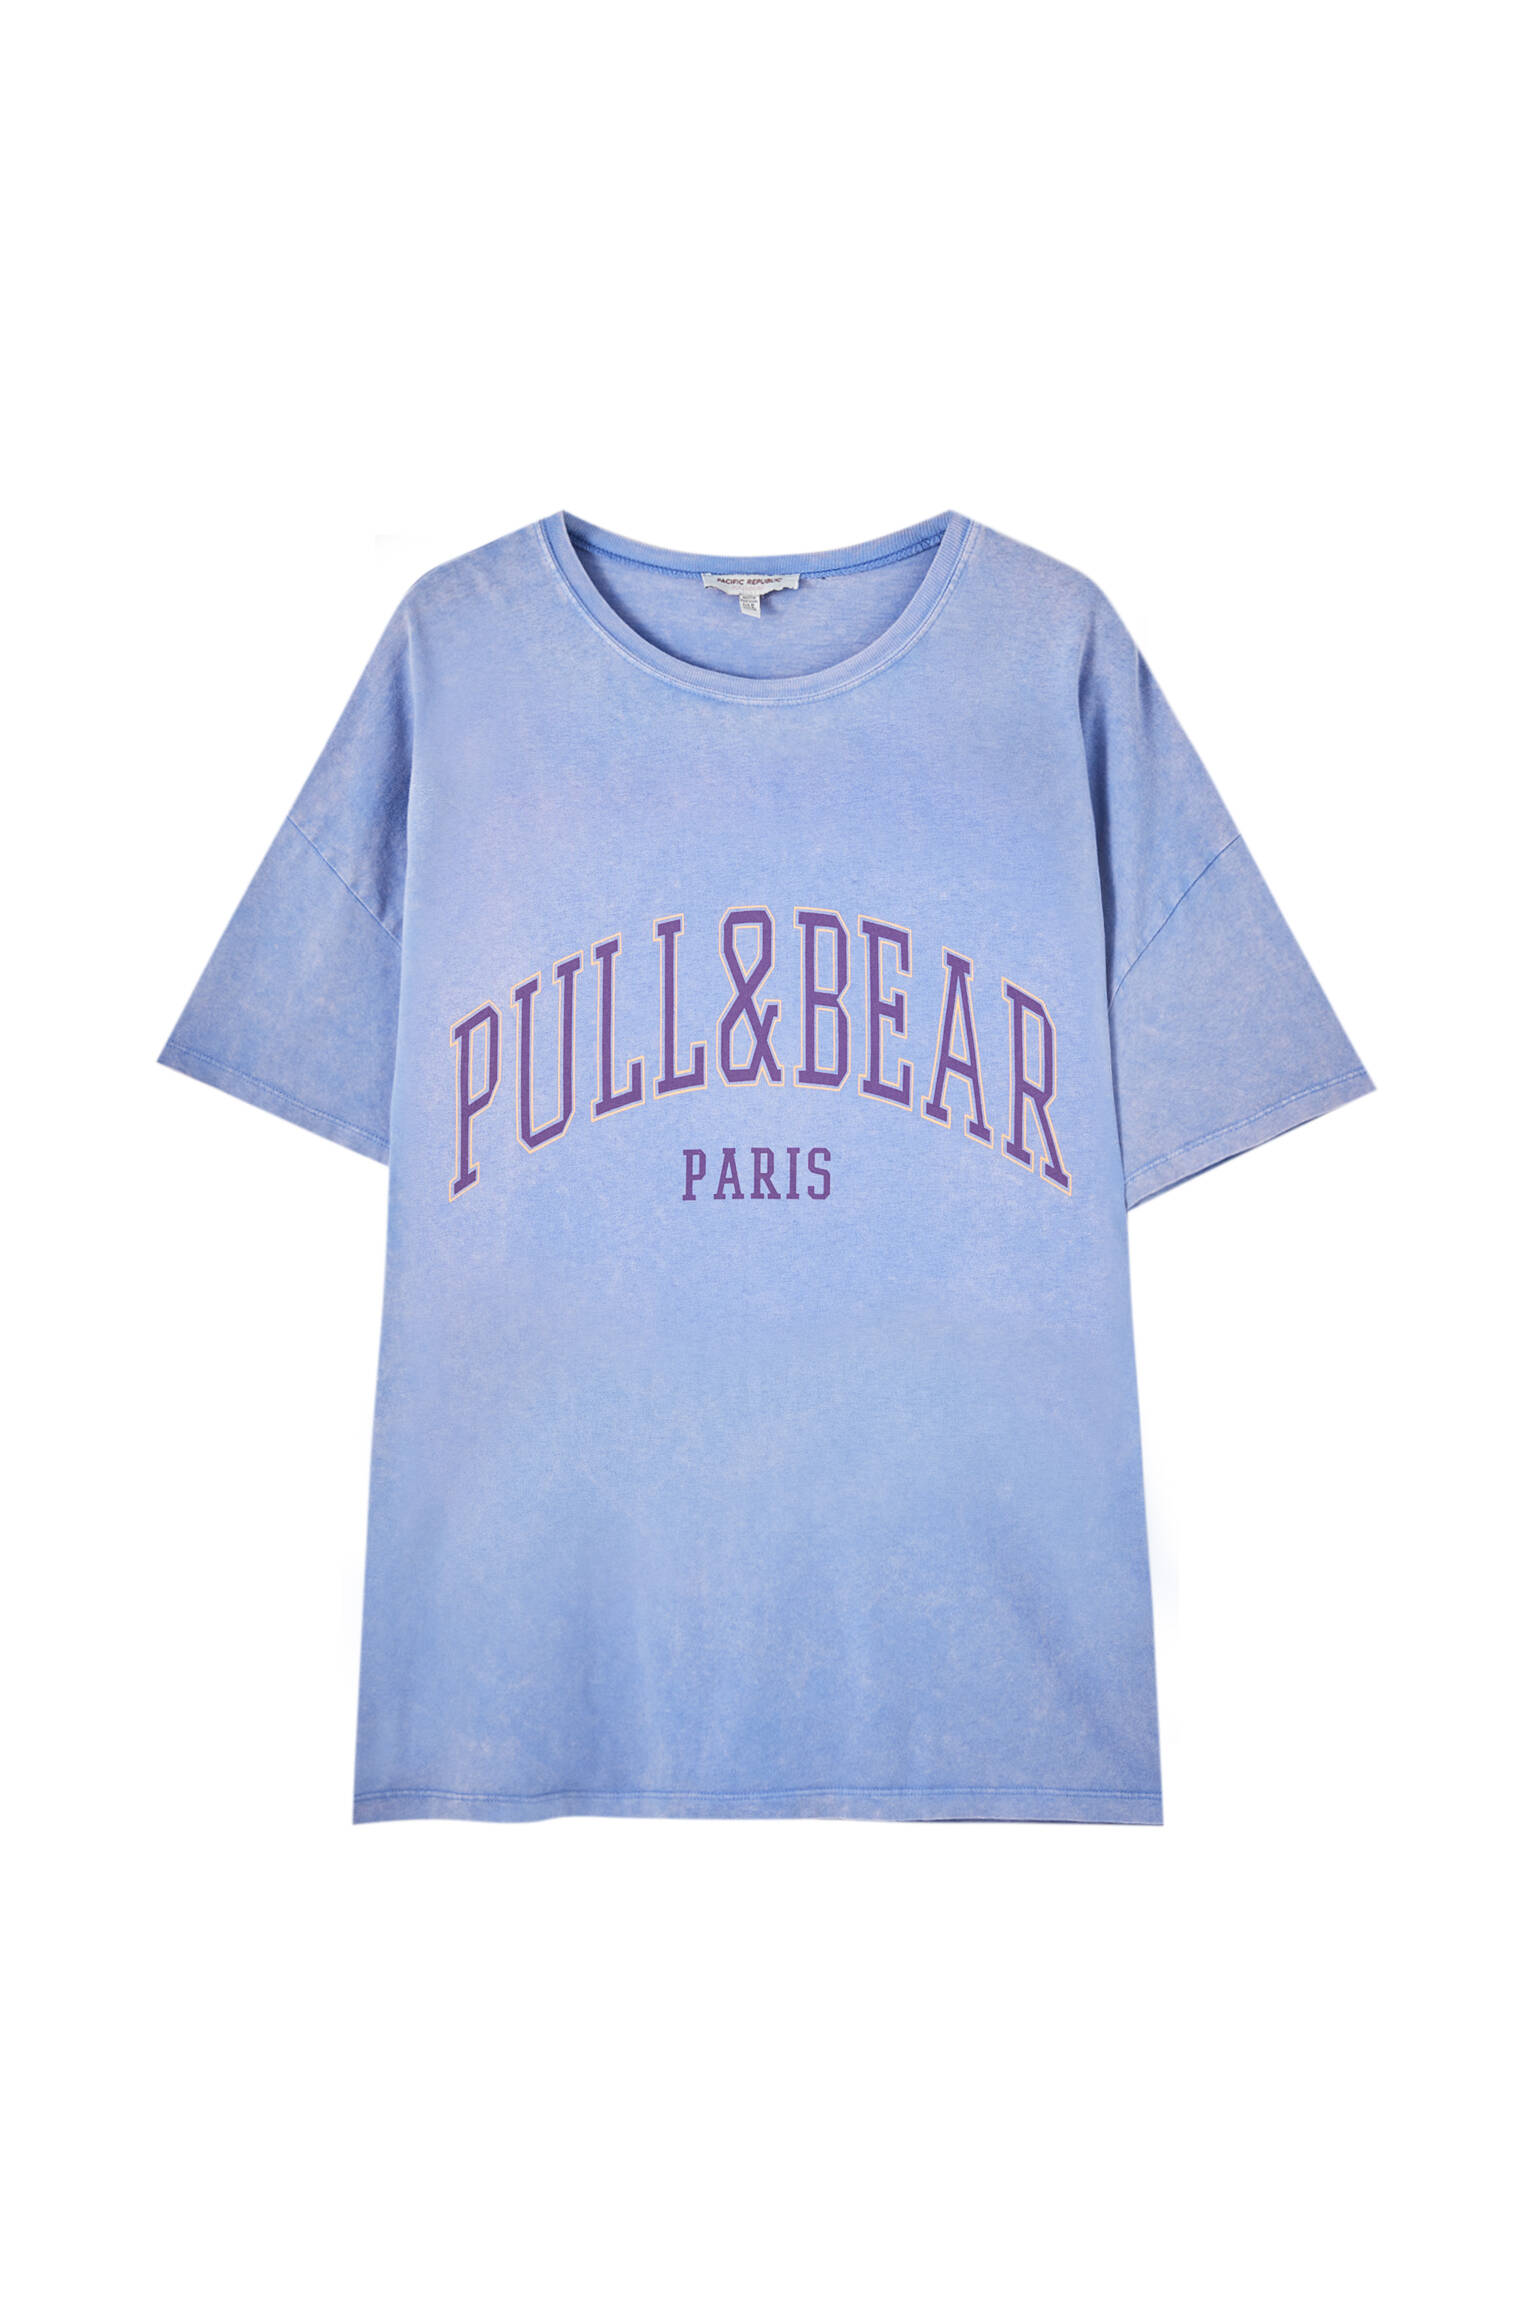 Pull&bear Femme T-shirt 100 % Coton à Col Rond Et Manches Courtes, Avec Logo Pull&bear Et Inscription Paris Contrastante Sur La Poitrine. Indigo DÉlavÉ Xl